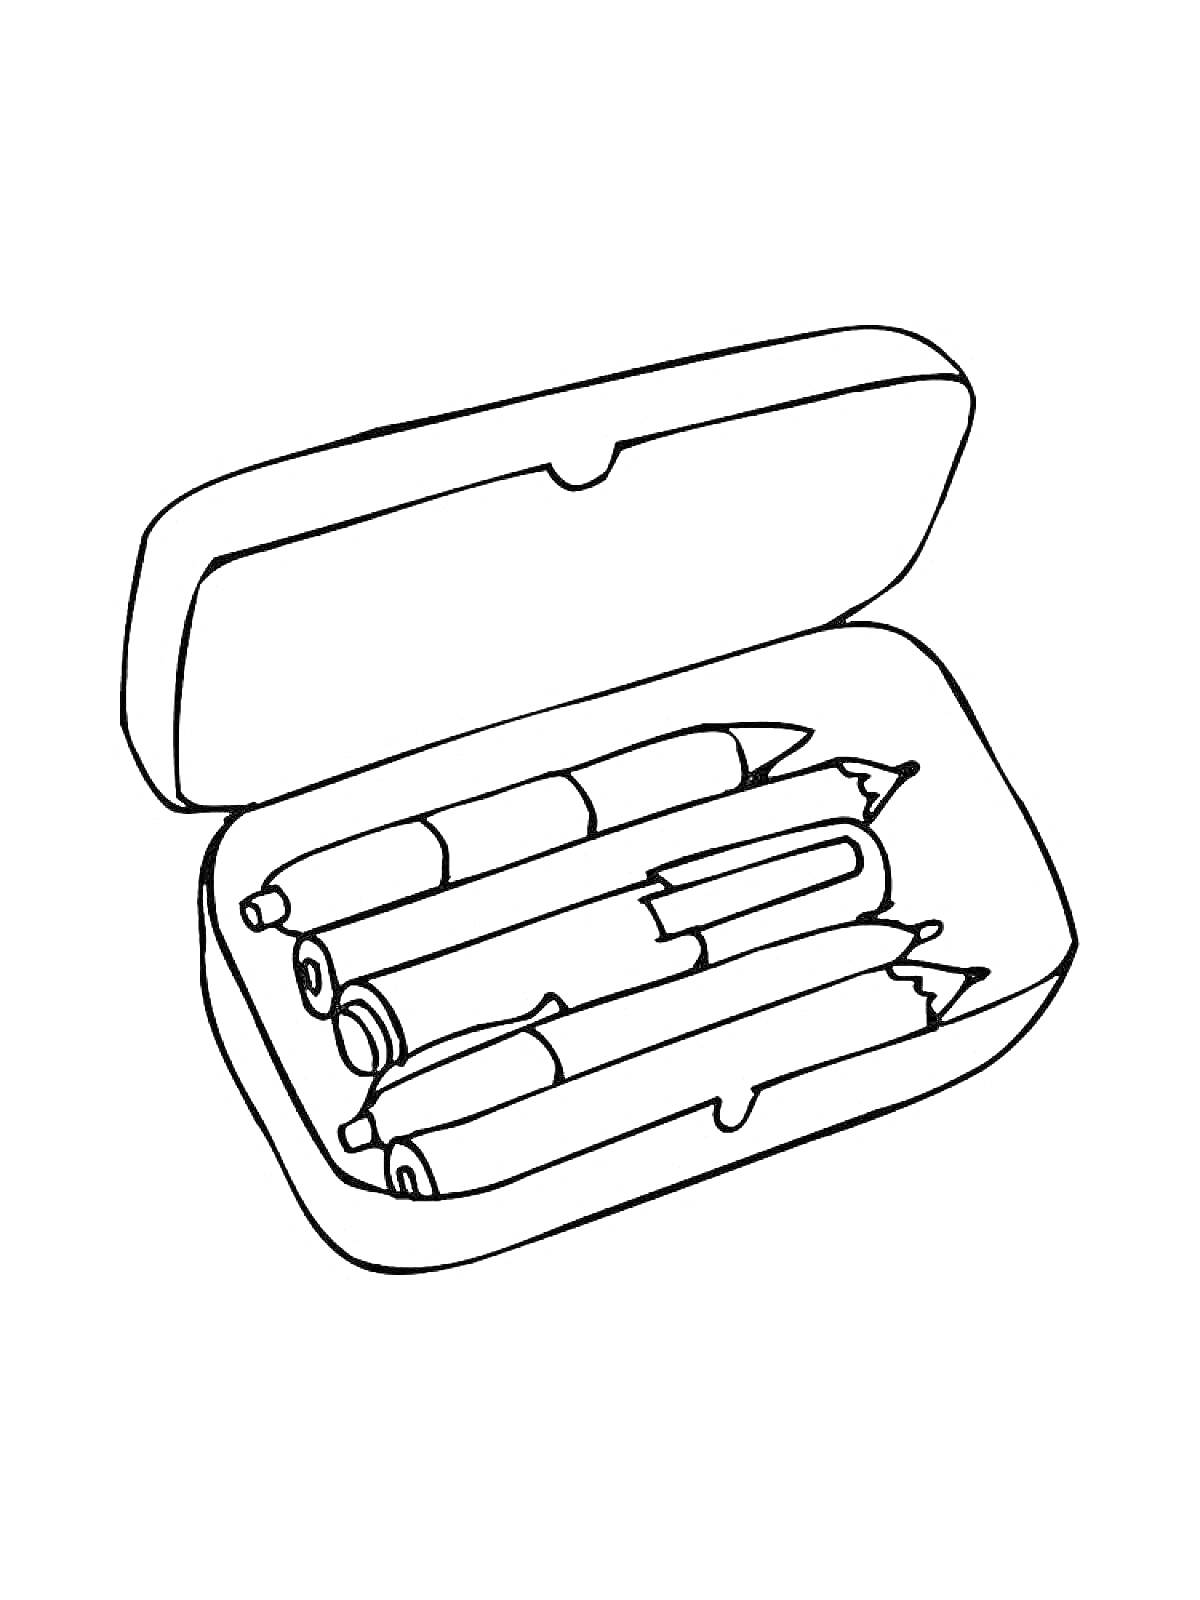 Раскраска Пенал с карандашами и фломастерами